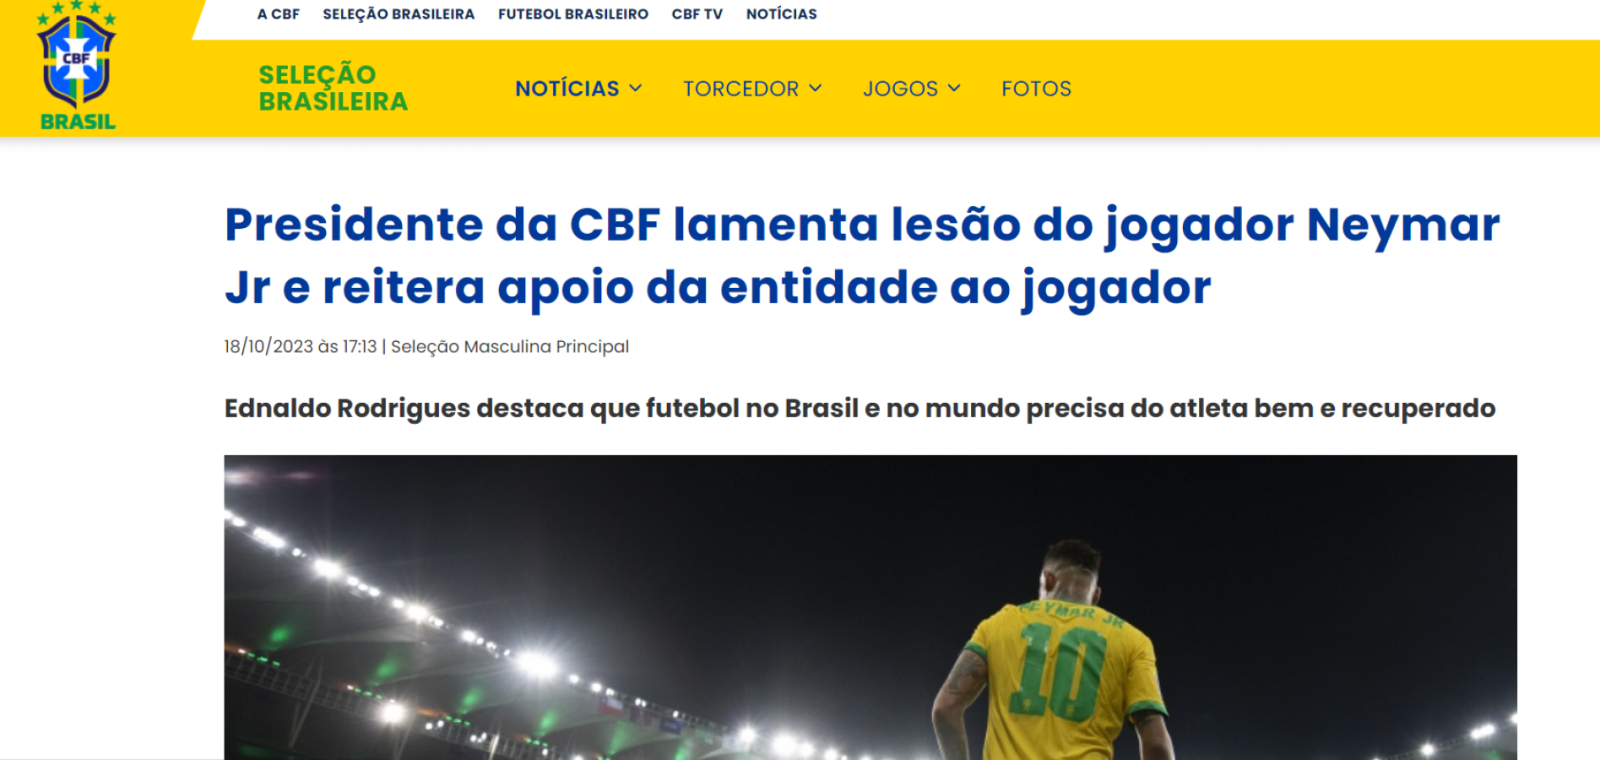 Imagen La CBF, a través de su presidente, le envió un saludo y le brindó su apoyo a Neymar.